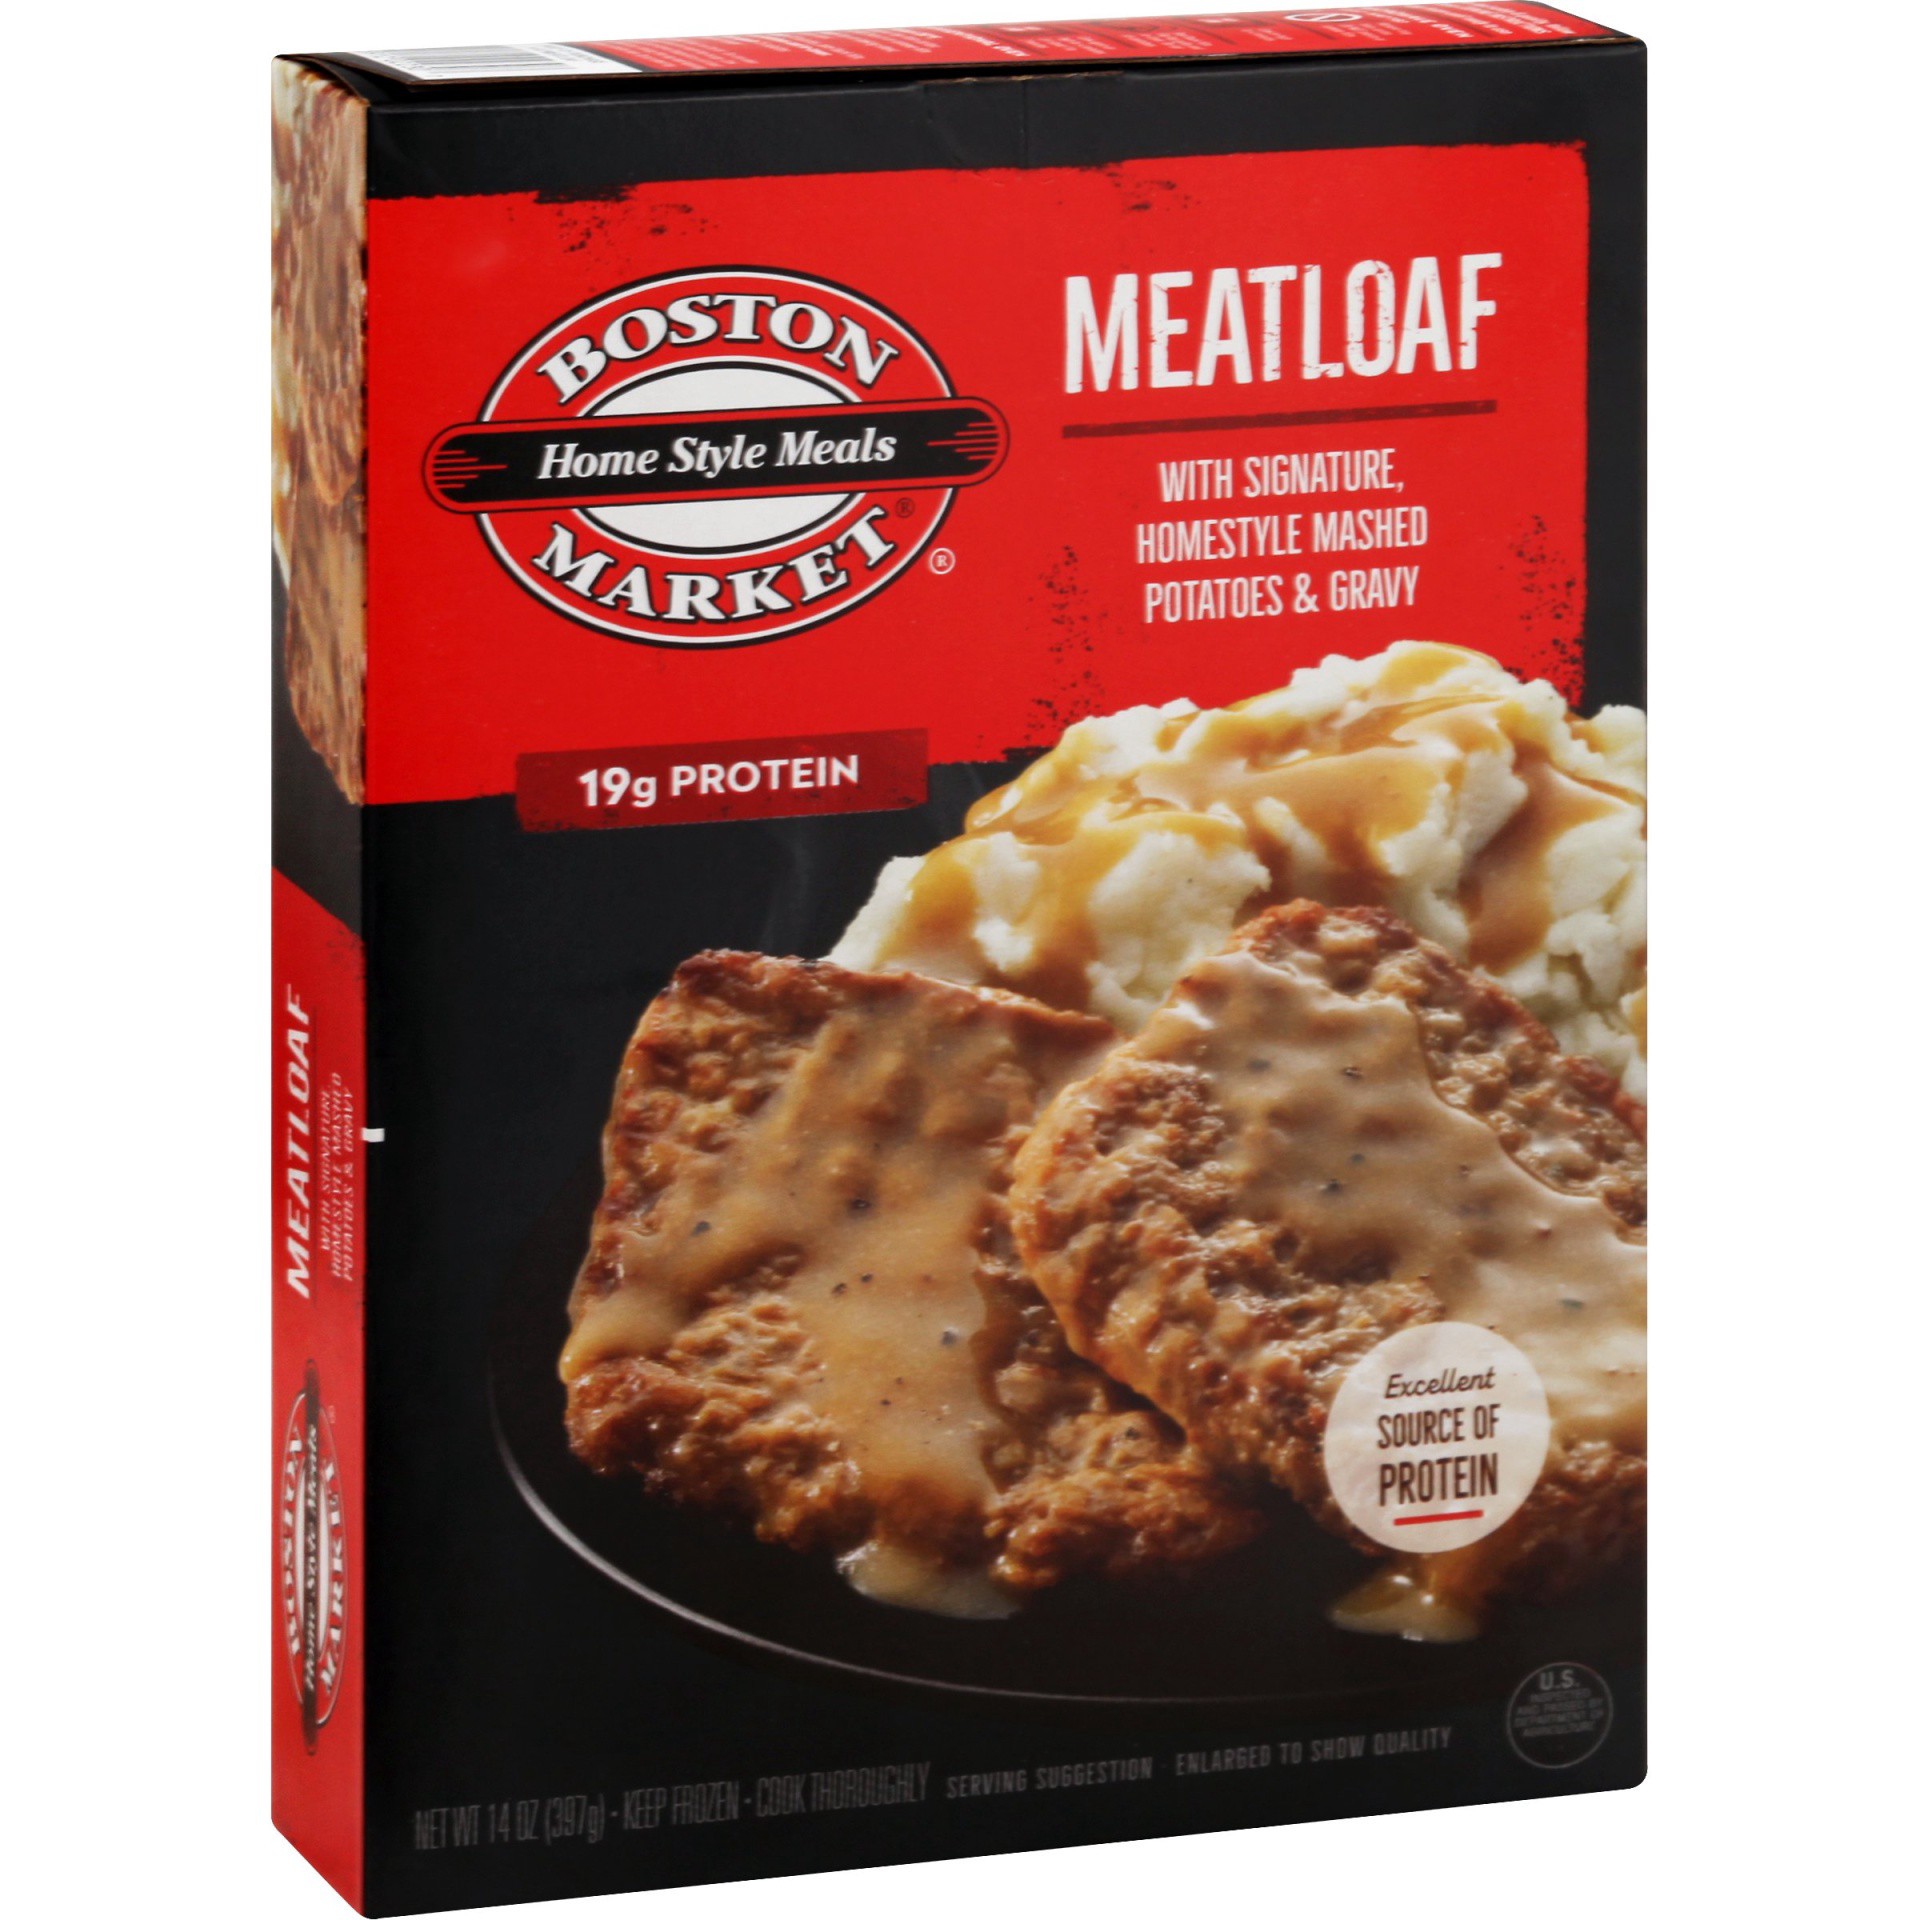 slide 1 of 4, Boston Market Home Style Meals Meatloaf, 14 oz